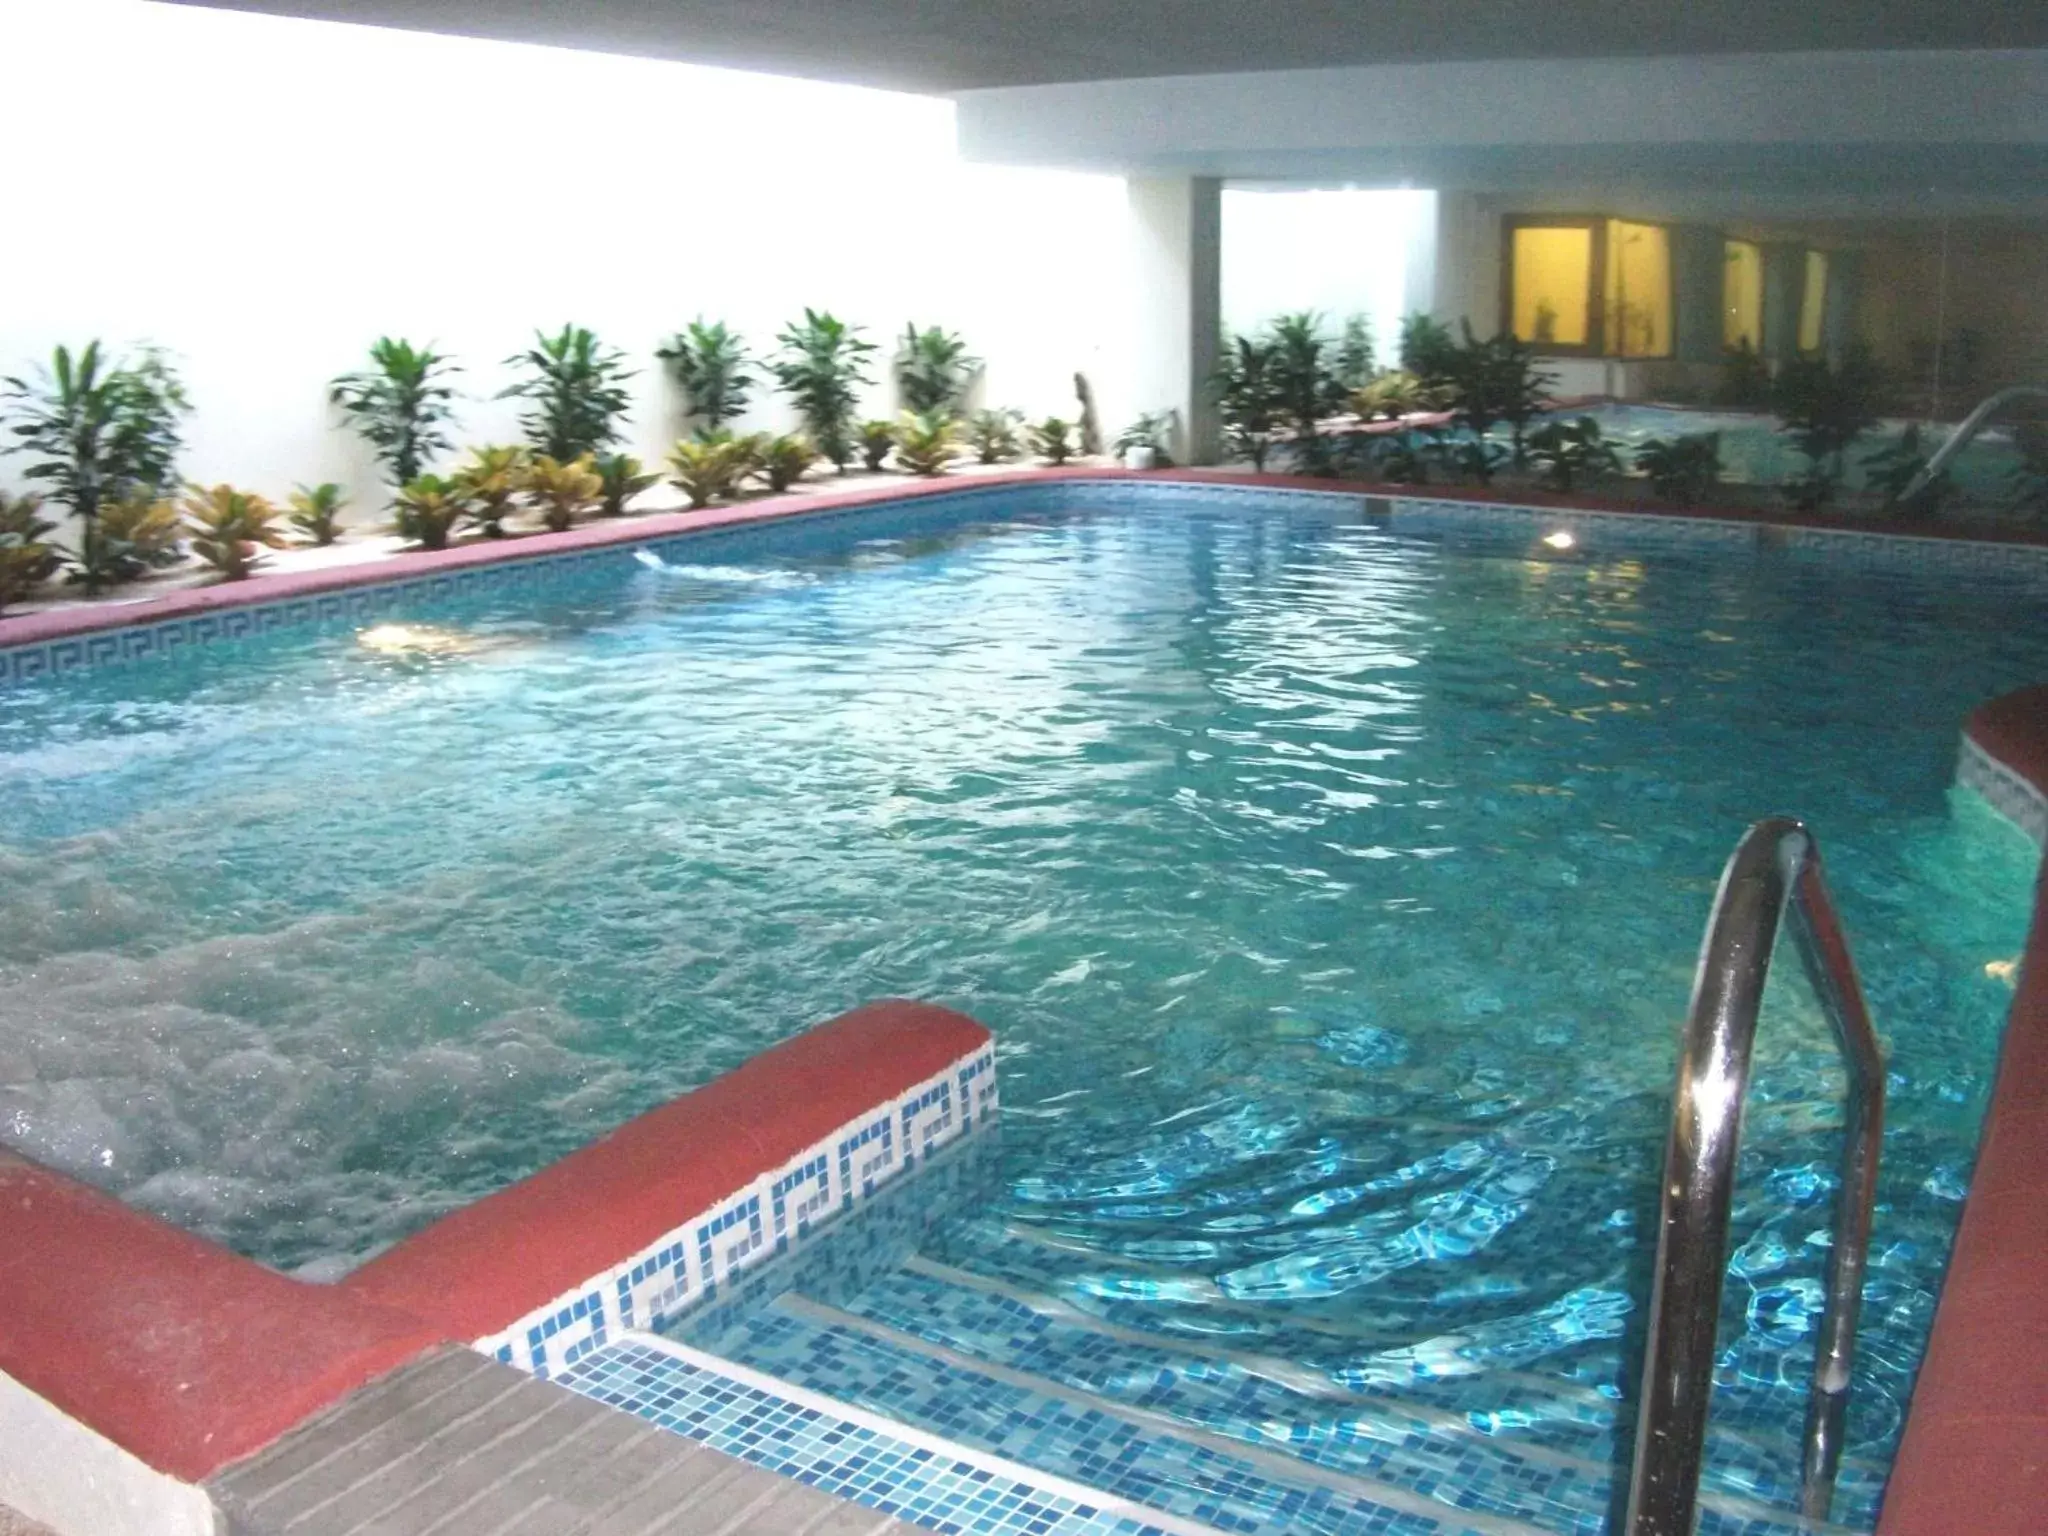 Spa and wellness centre/facilities, Swimming Pool in Senator Marbella Spa Hotel